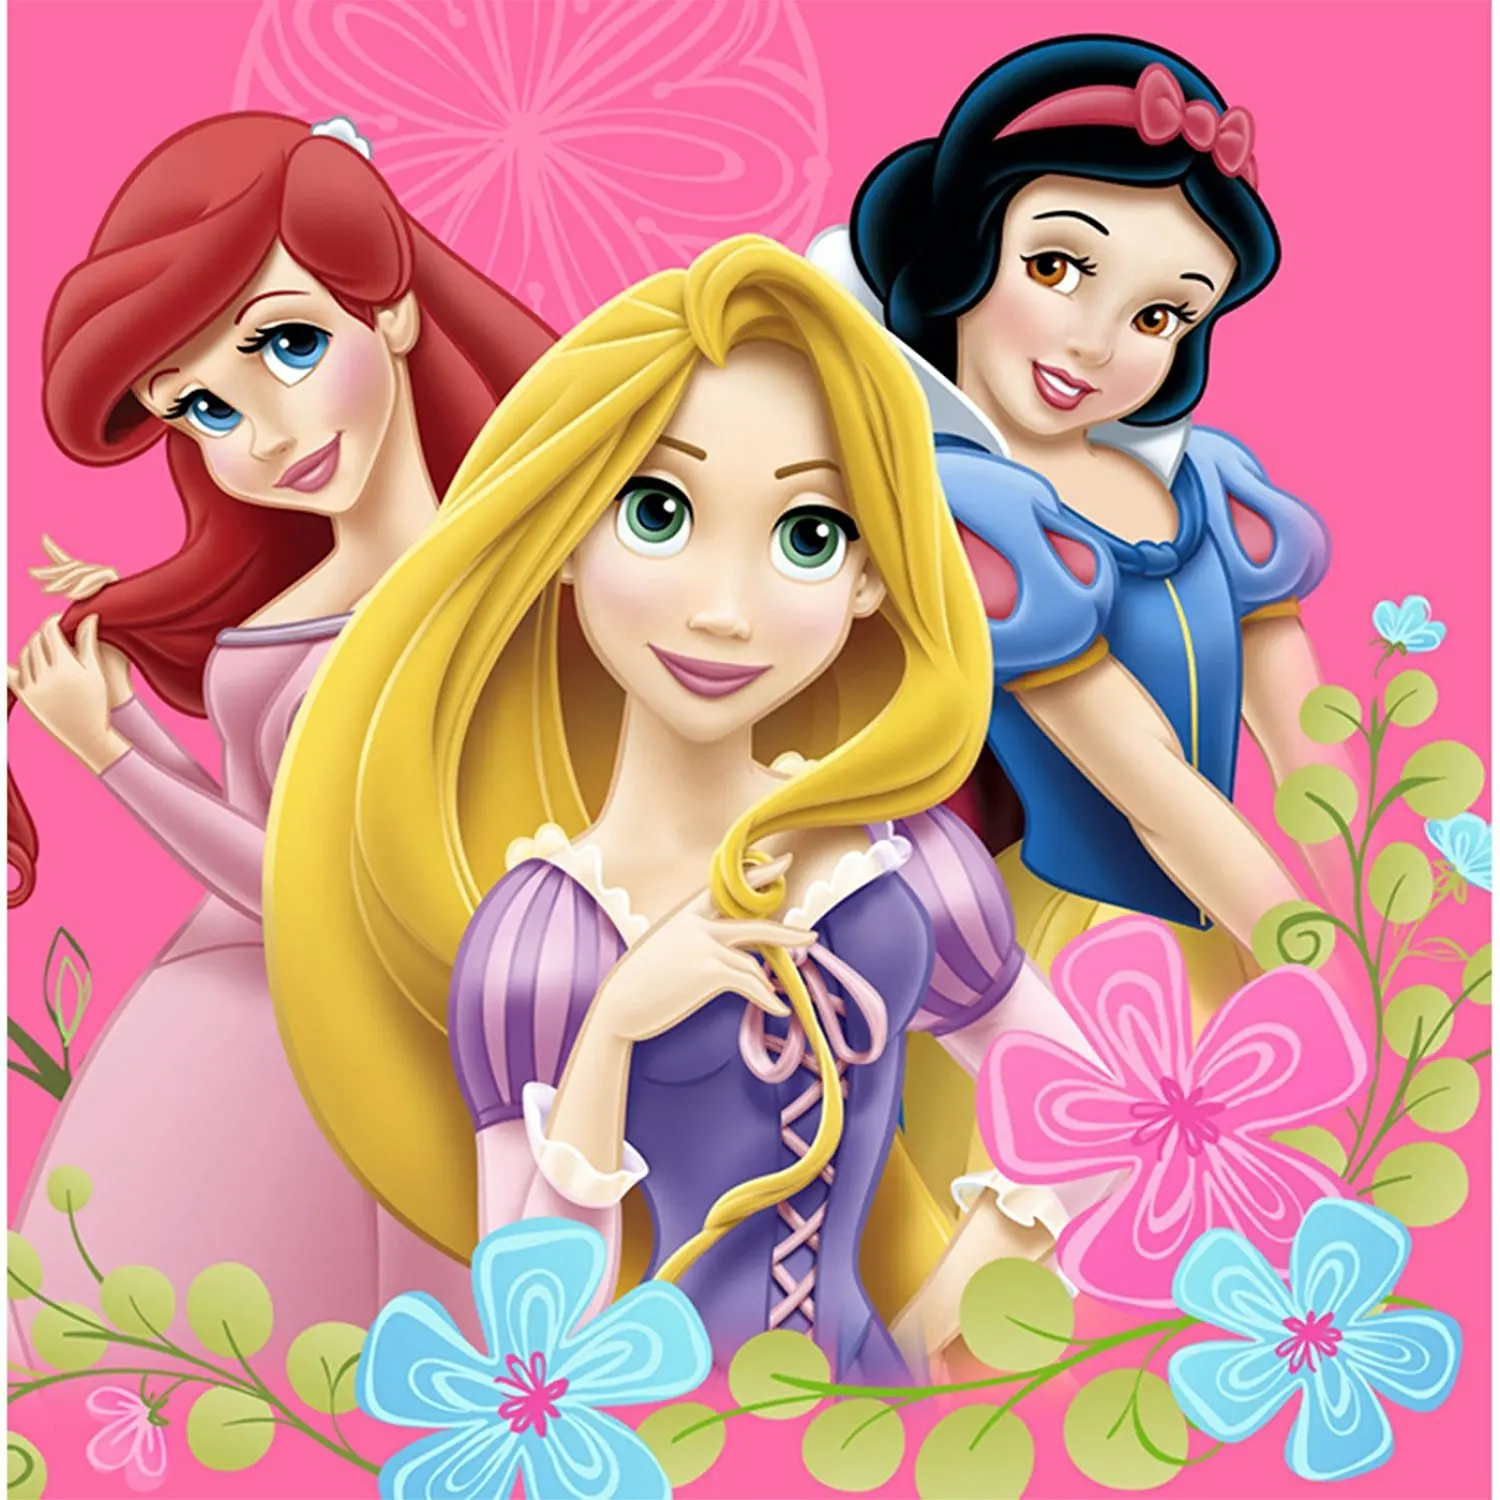 Три принцессы